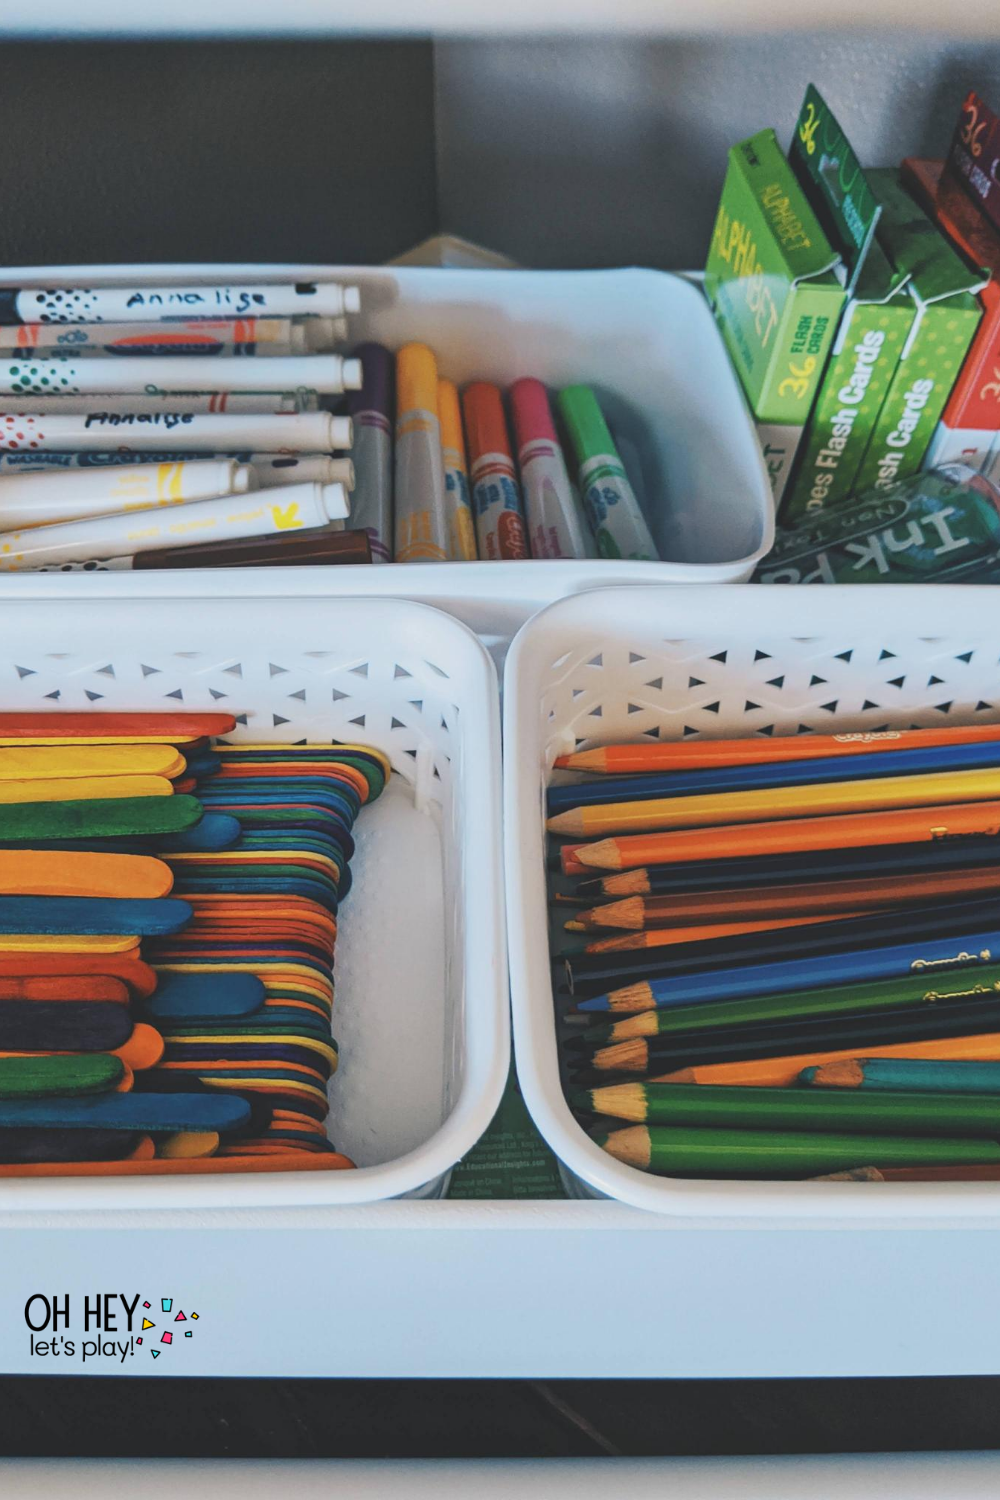 Kids Art Supplies Storage Box